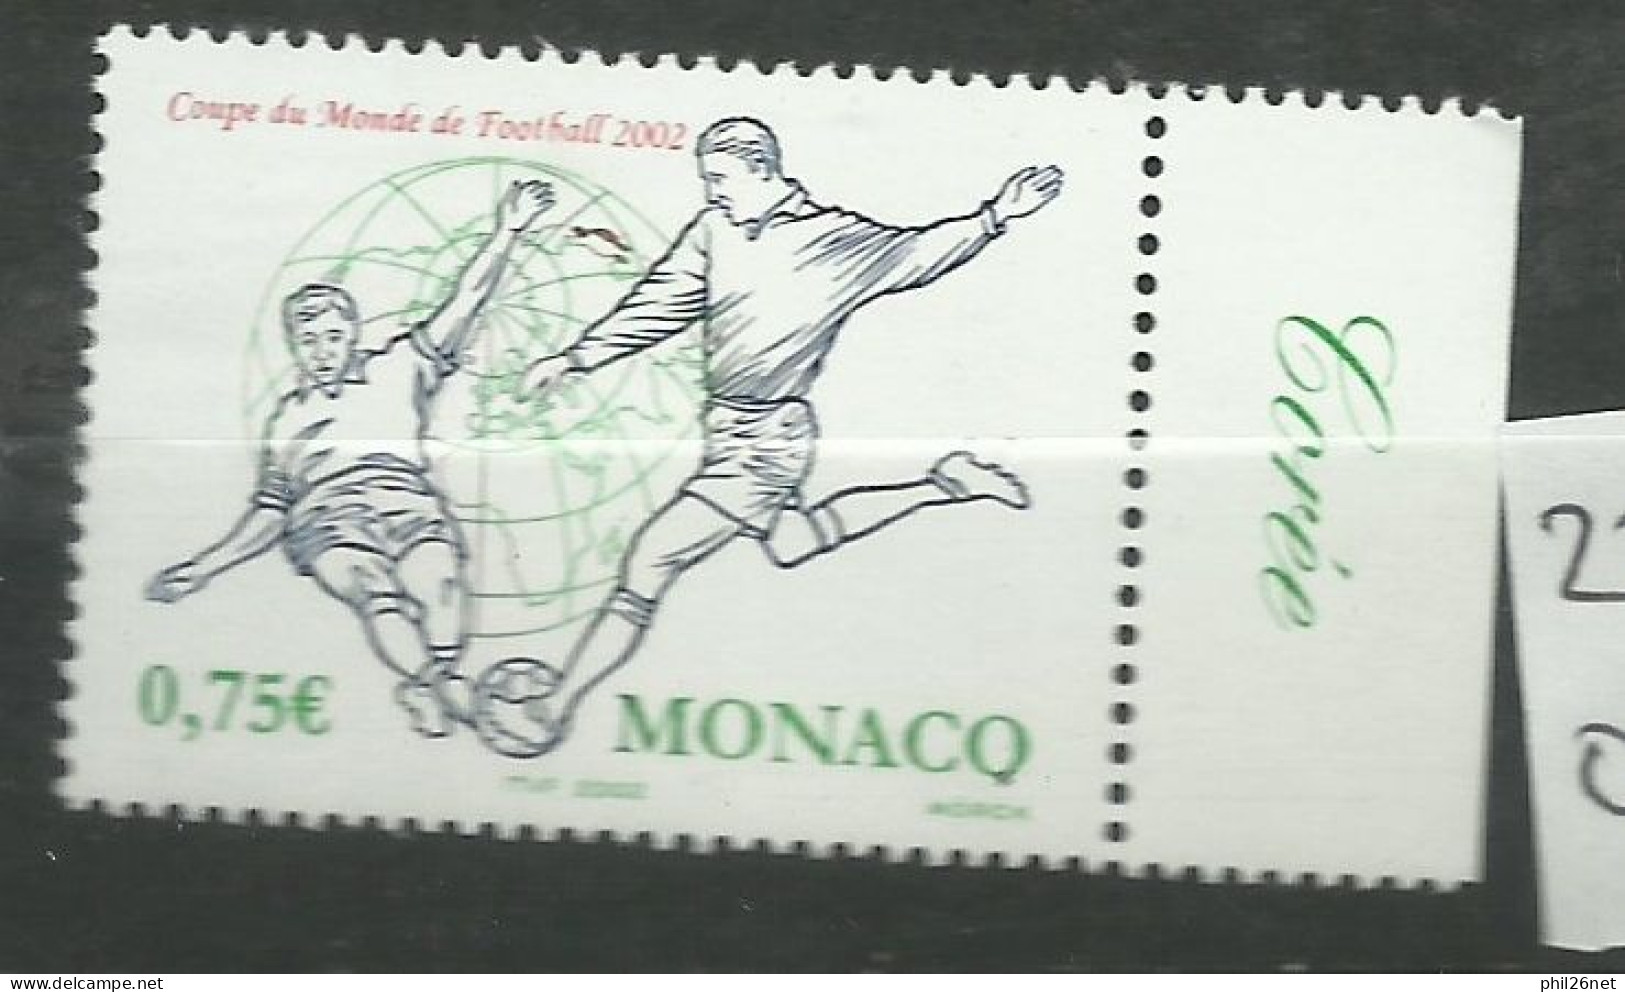 Monaco  N° 2350  Coupe Du Monde Football  2002 Corée Du Sud Et Japon   Neuf  *  *     B/TB   Voir Scans  Soldé ! ! ! - 2002 – Zuid-Korea / Japan